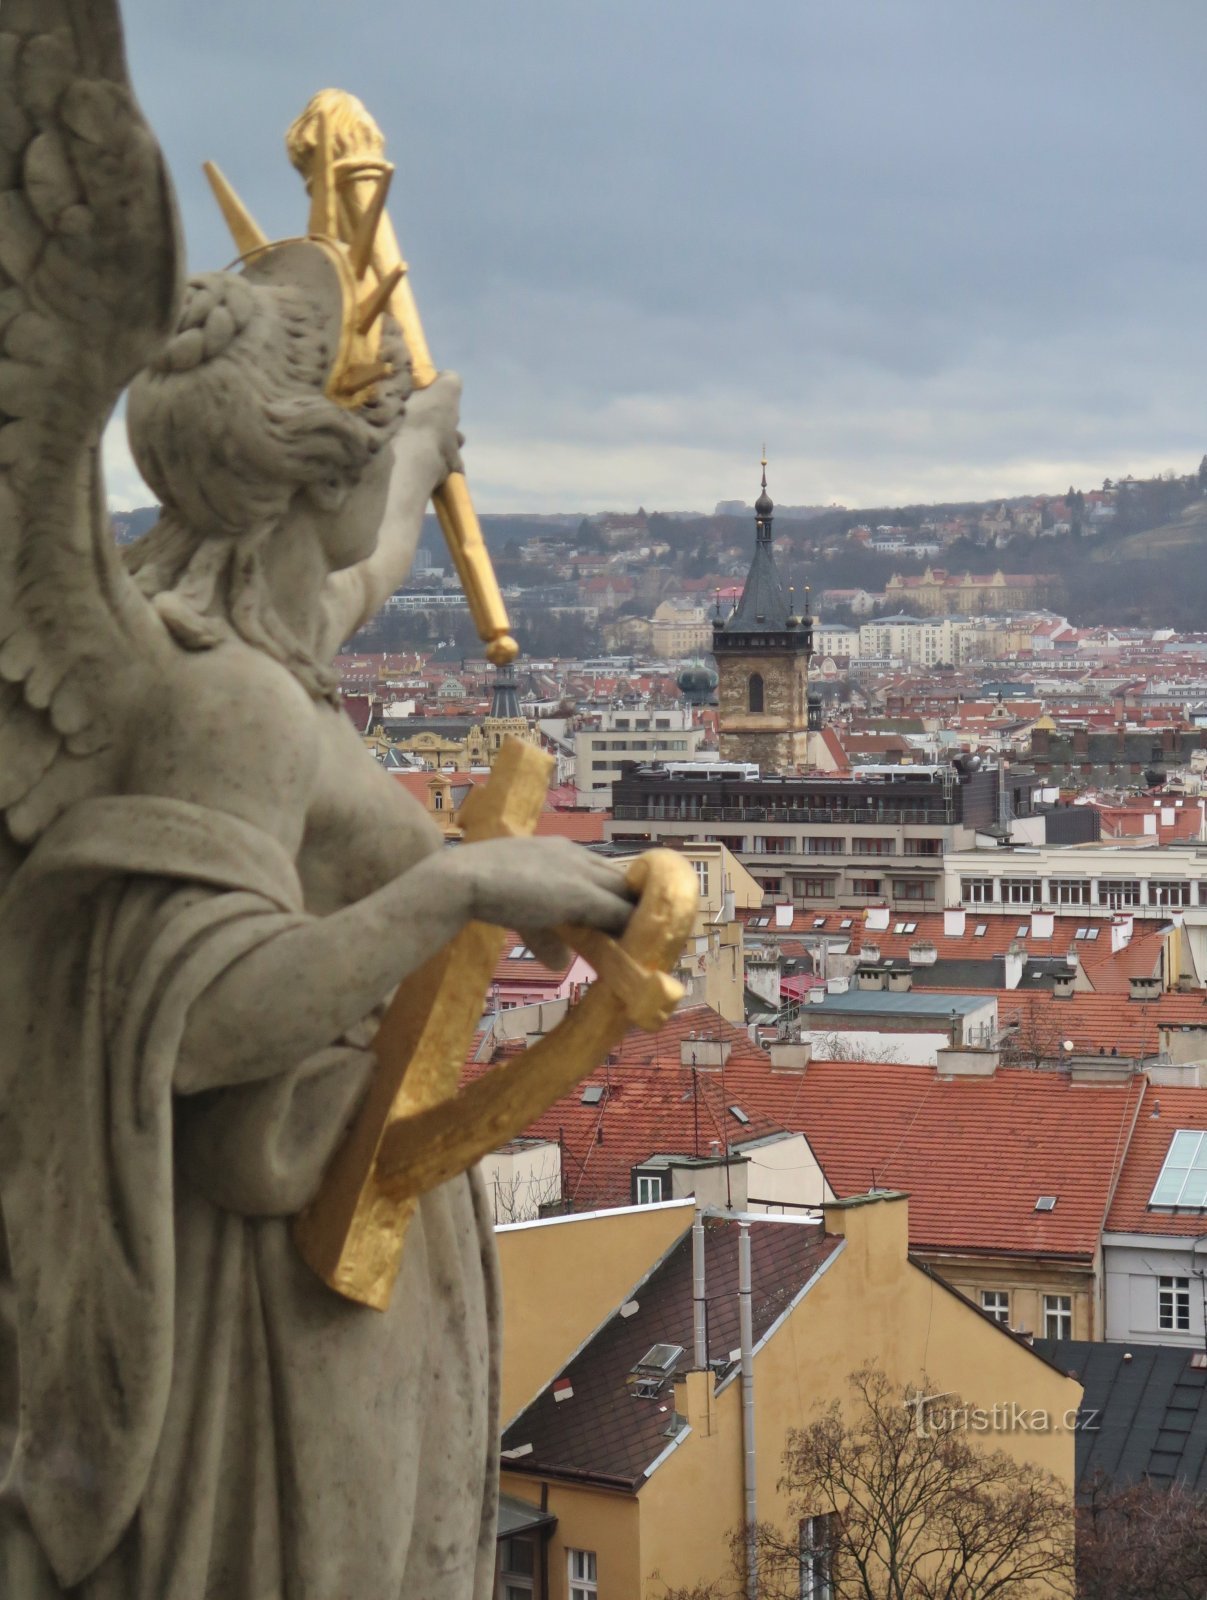 Praga (Novo mesto) - kupola Narodnega muzeja